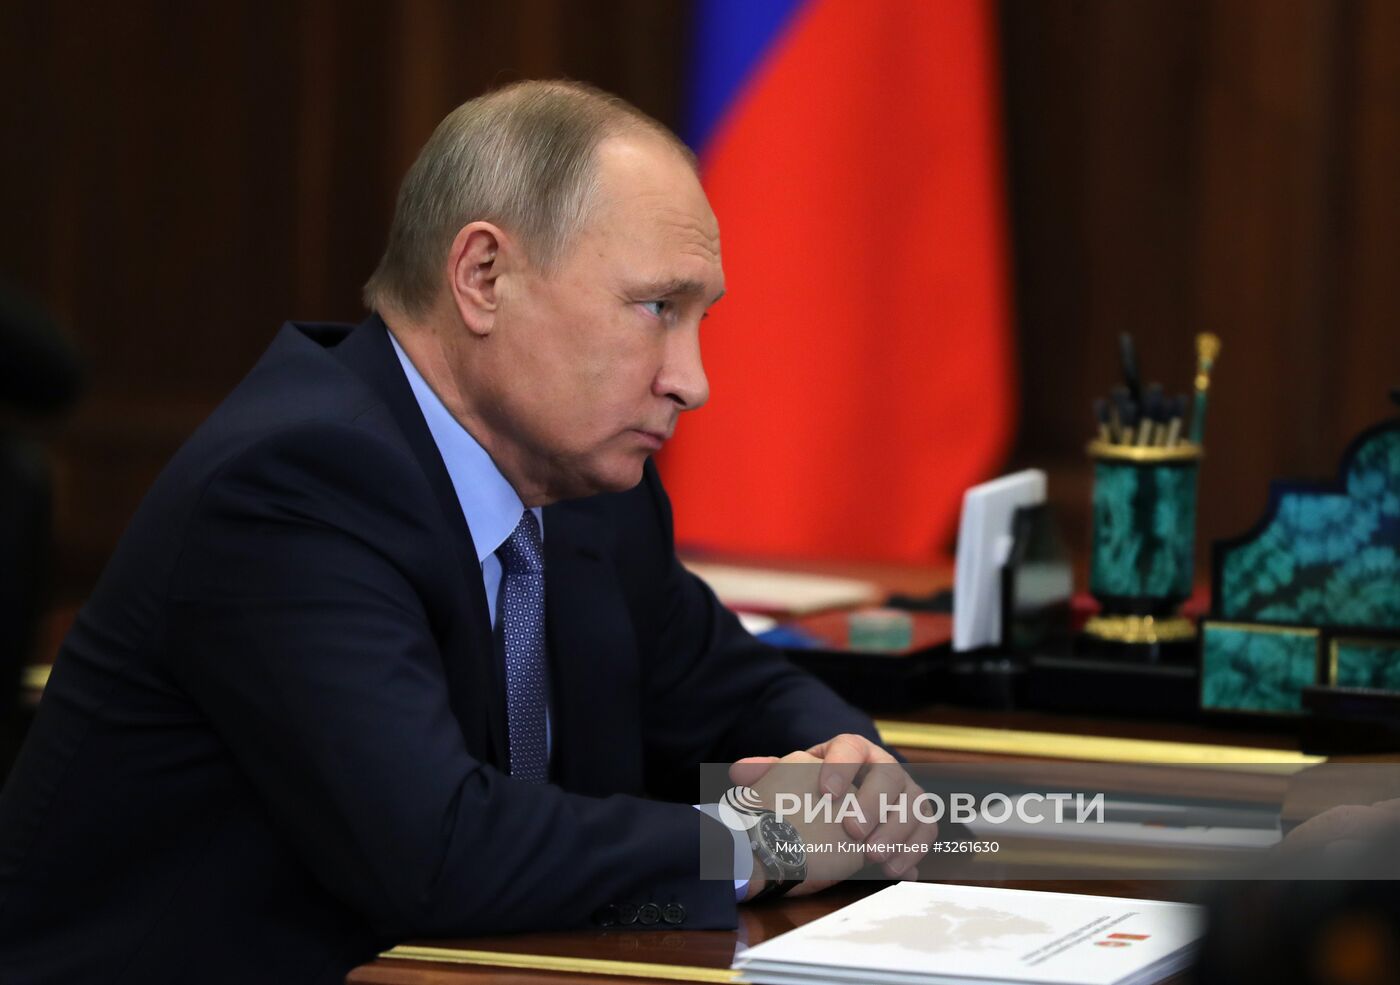 Рабочая встреча президента РФ В. Путина с главой Татарстана Р. Миннихановым